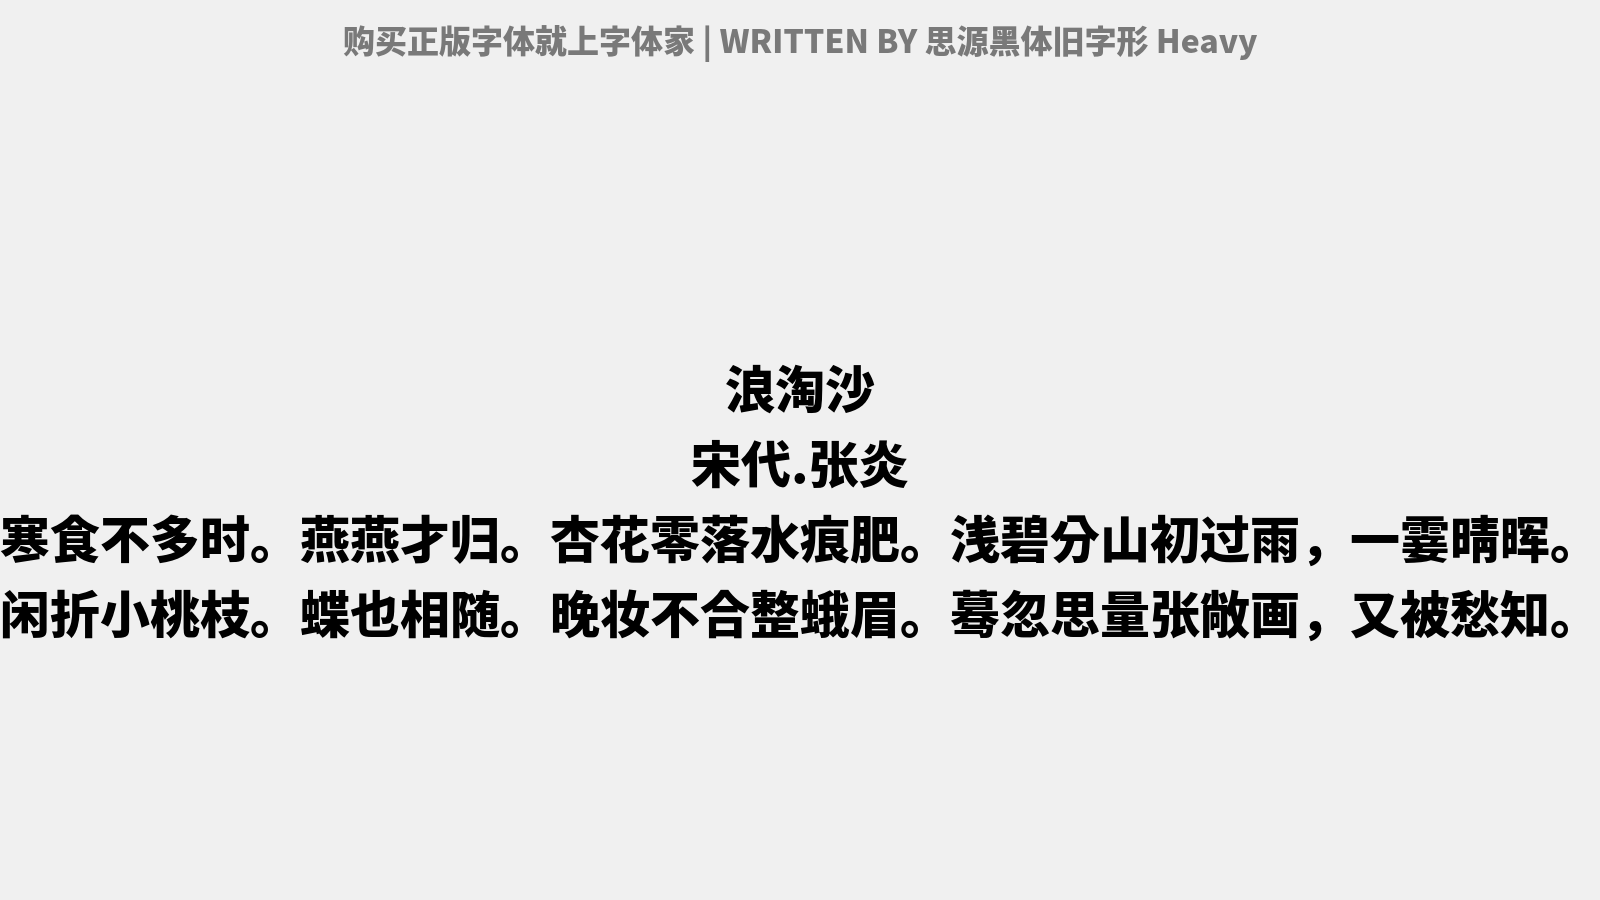 思源黑体旧字形heavy免费字体下载 中文字体免费下载尽在字体家